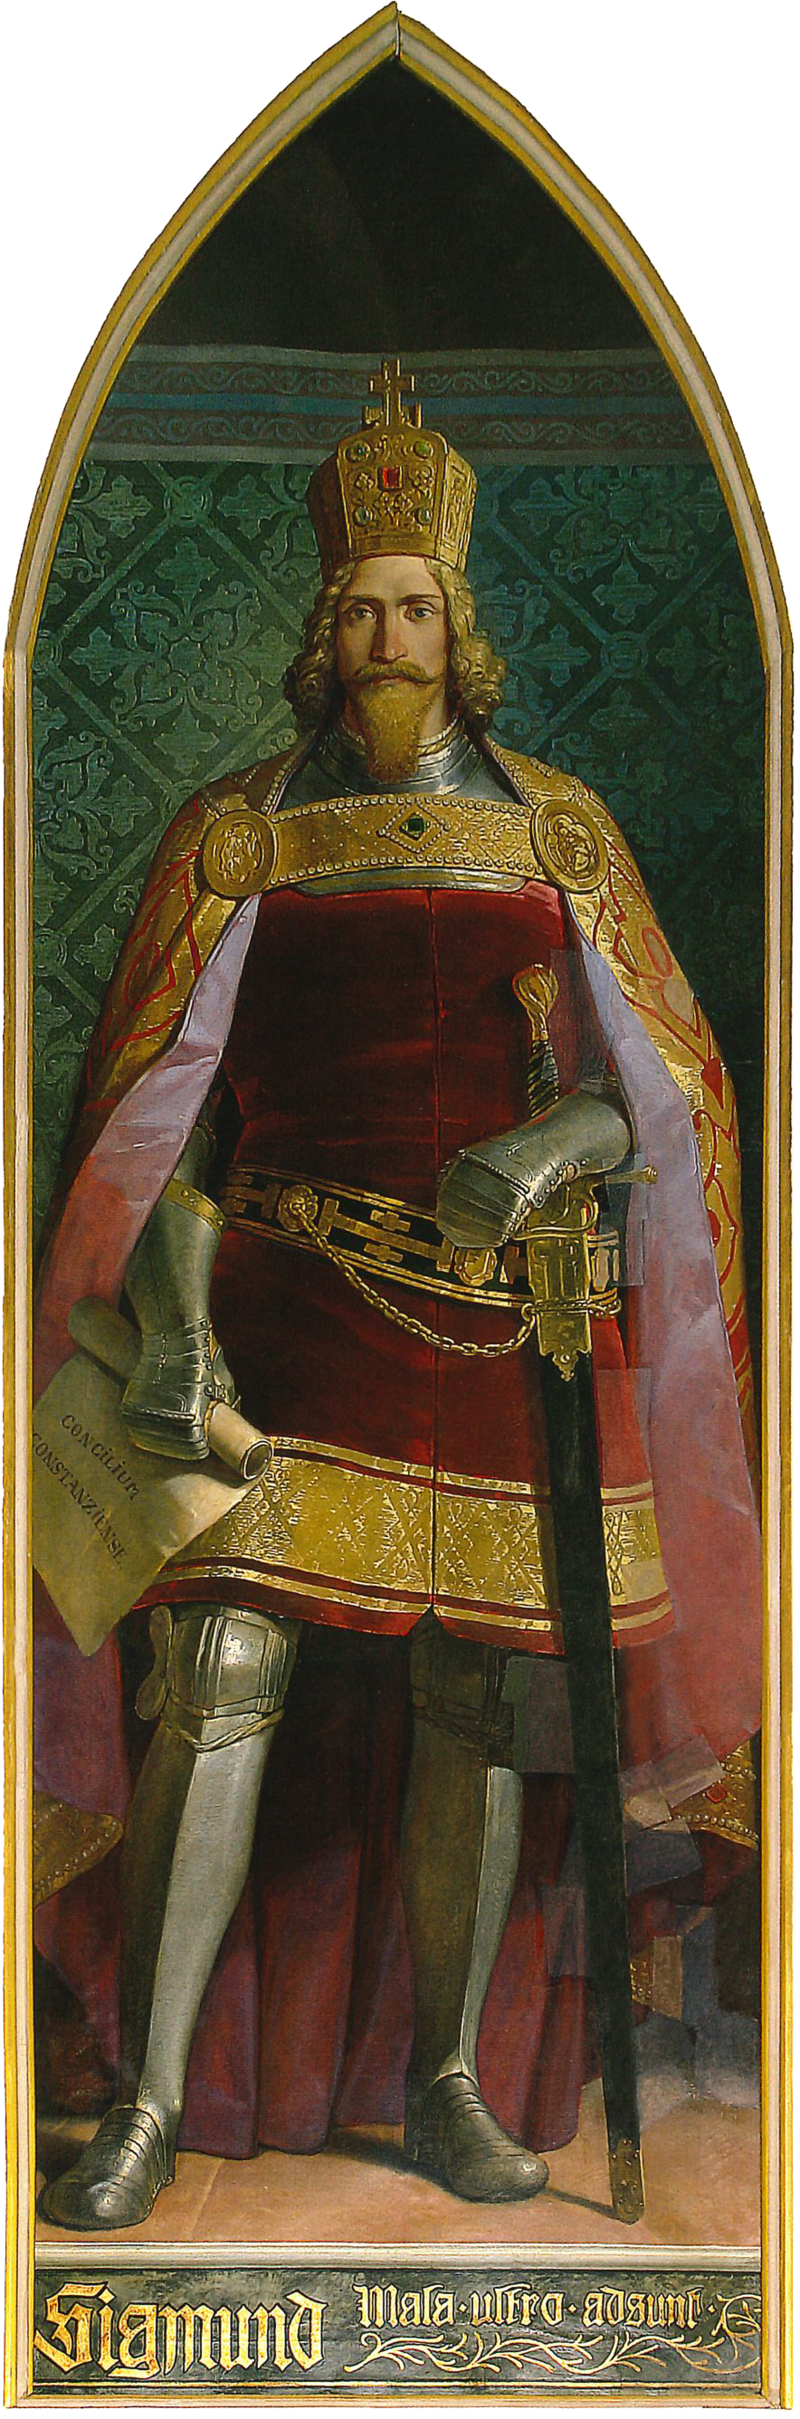 Sigismund von Luxemburg, (Philipp von Foltz)